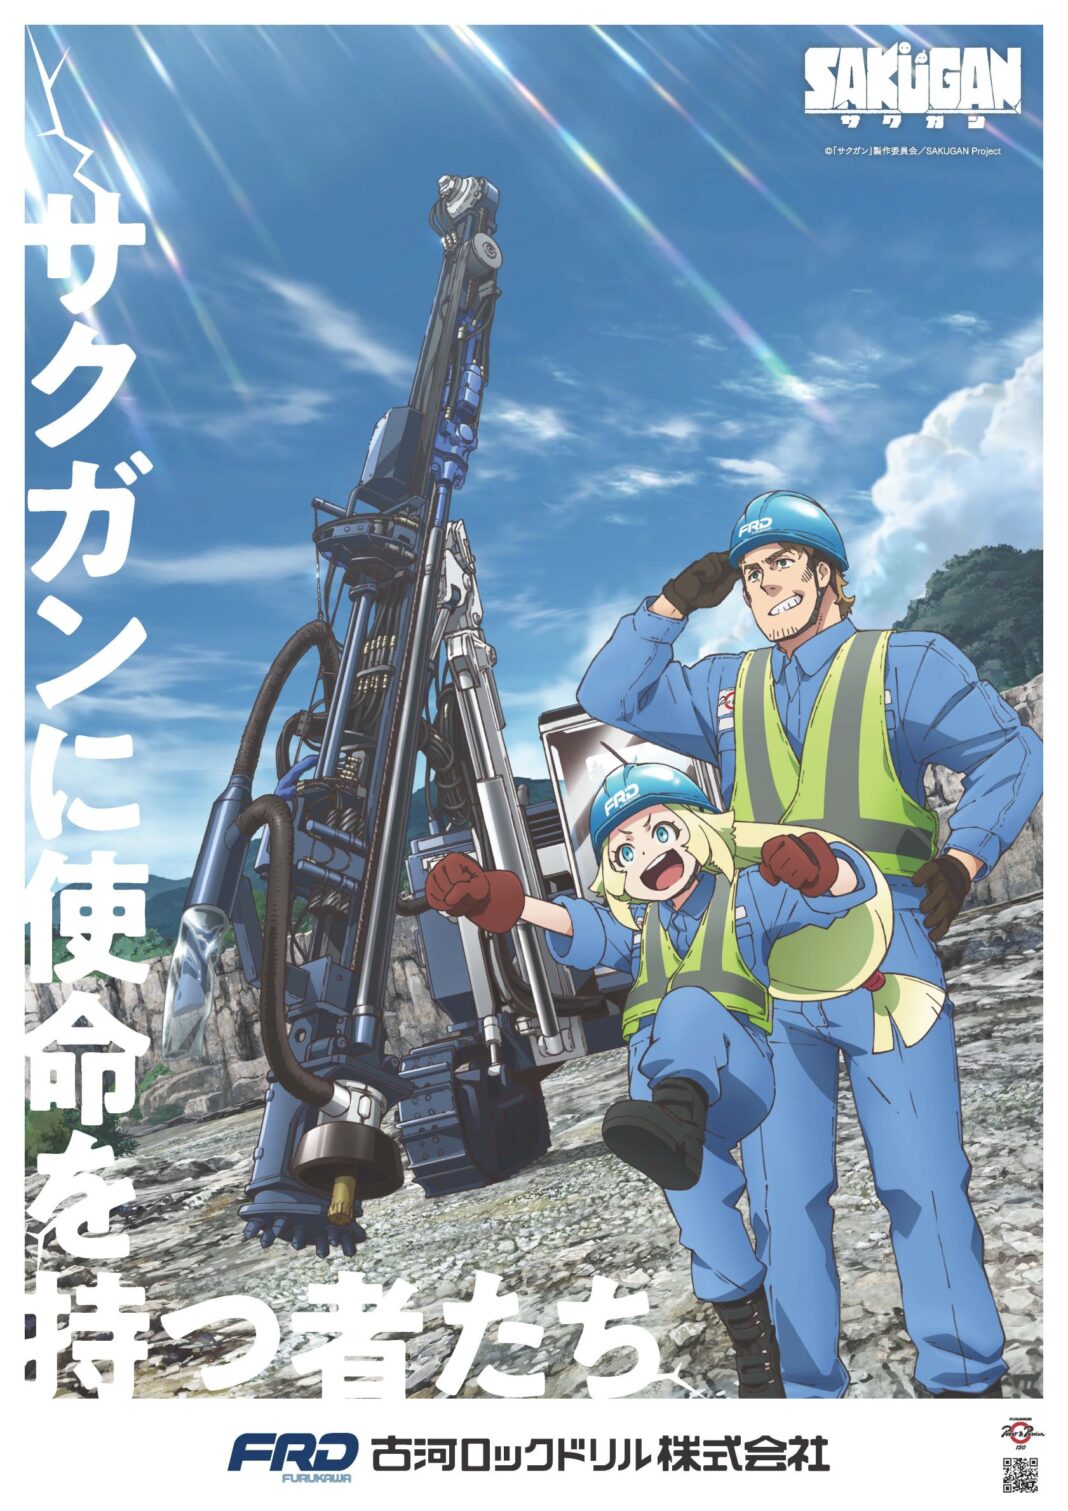 TVアニメ『サクガン』×古河ロックドリル コラボポスターを制作のメイン画像